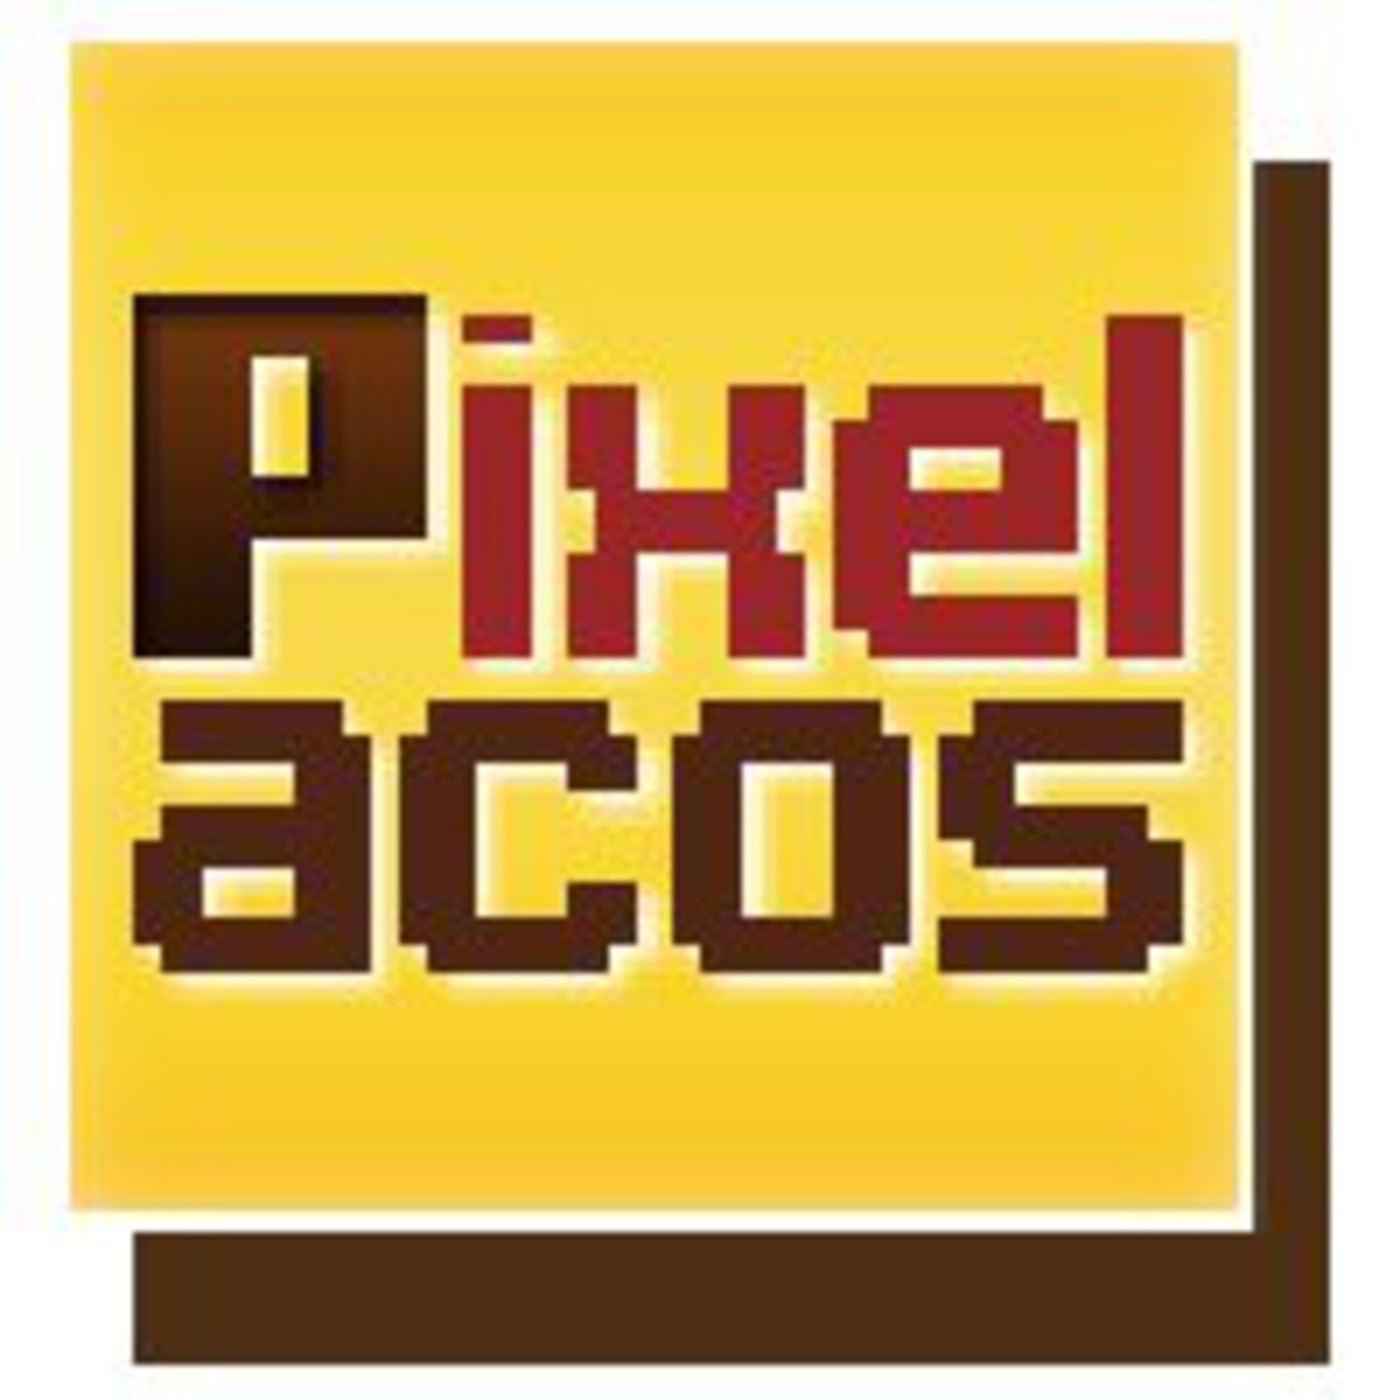 Pixelacos 024 - Consolas portátiles opensource